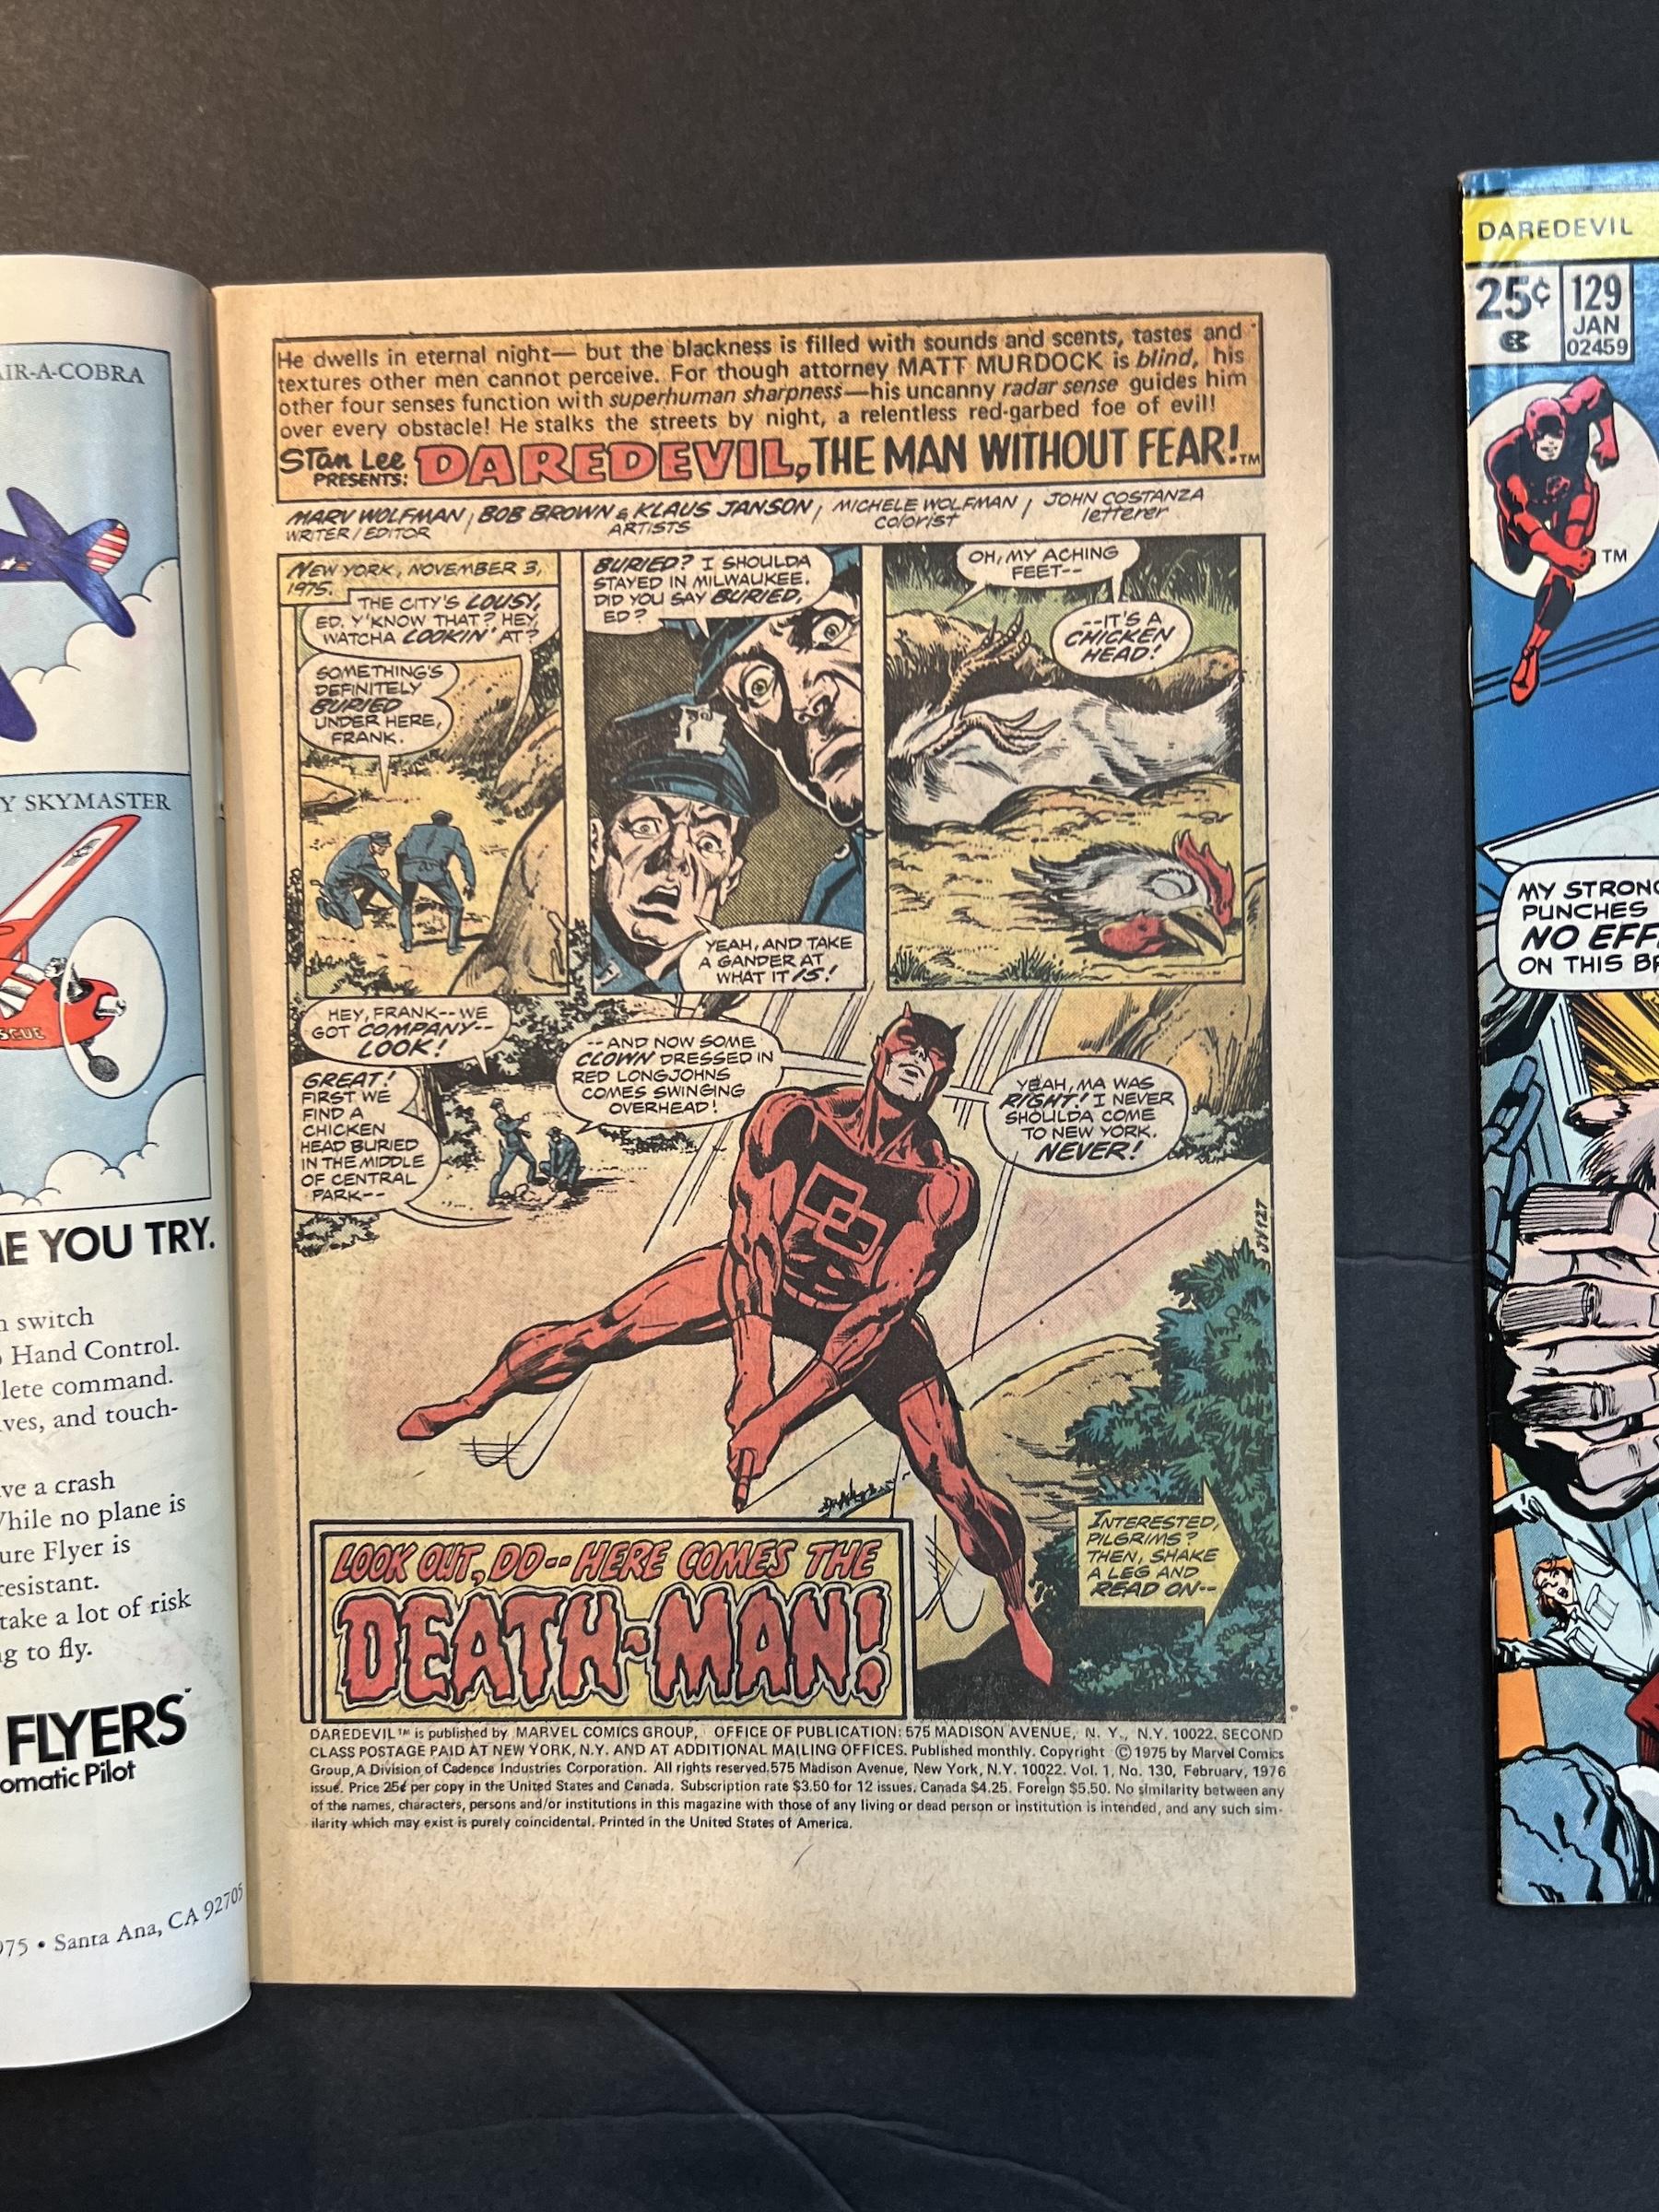 Daredevil #129 & #130 Marvel Comic Books